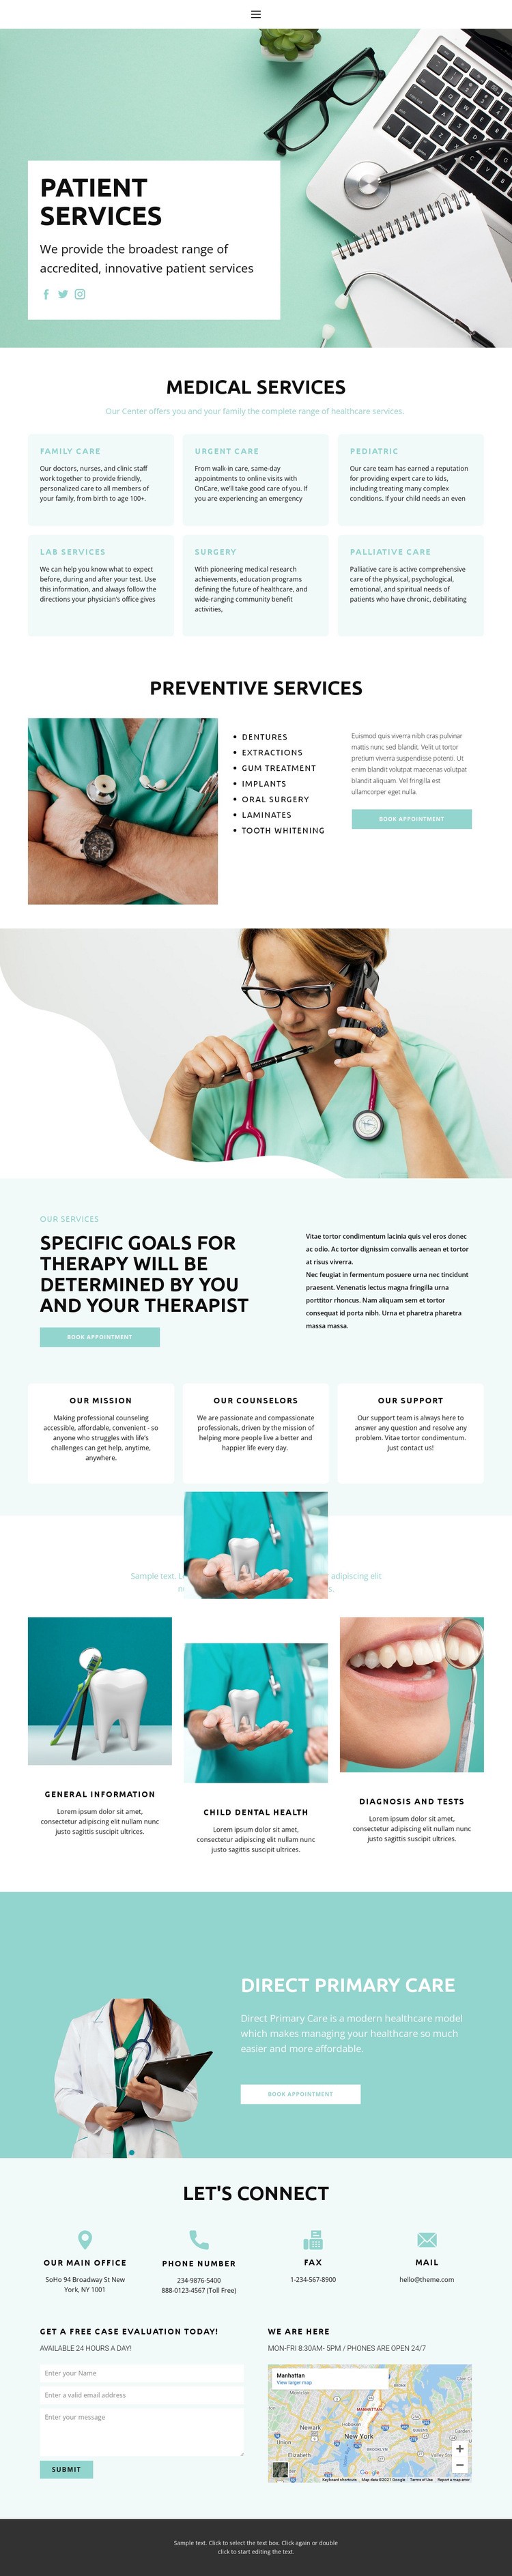 Evidence-based medicine Web Page Design